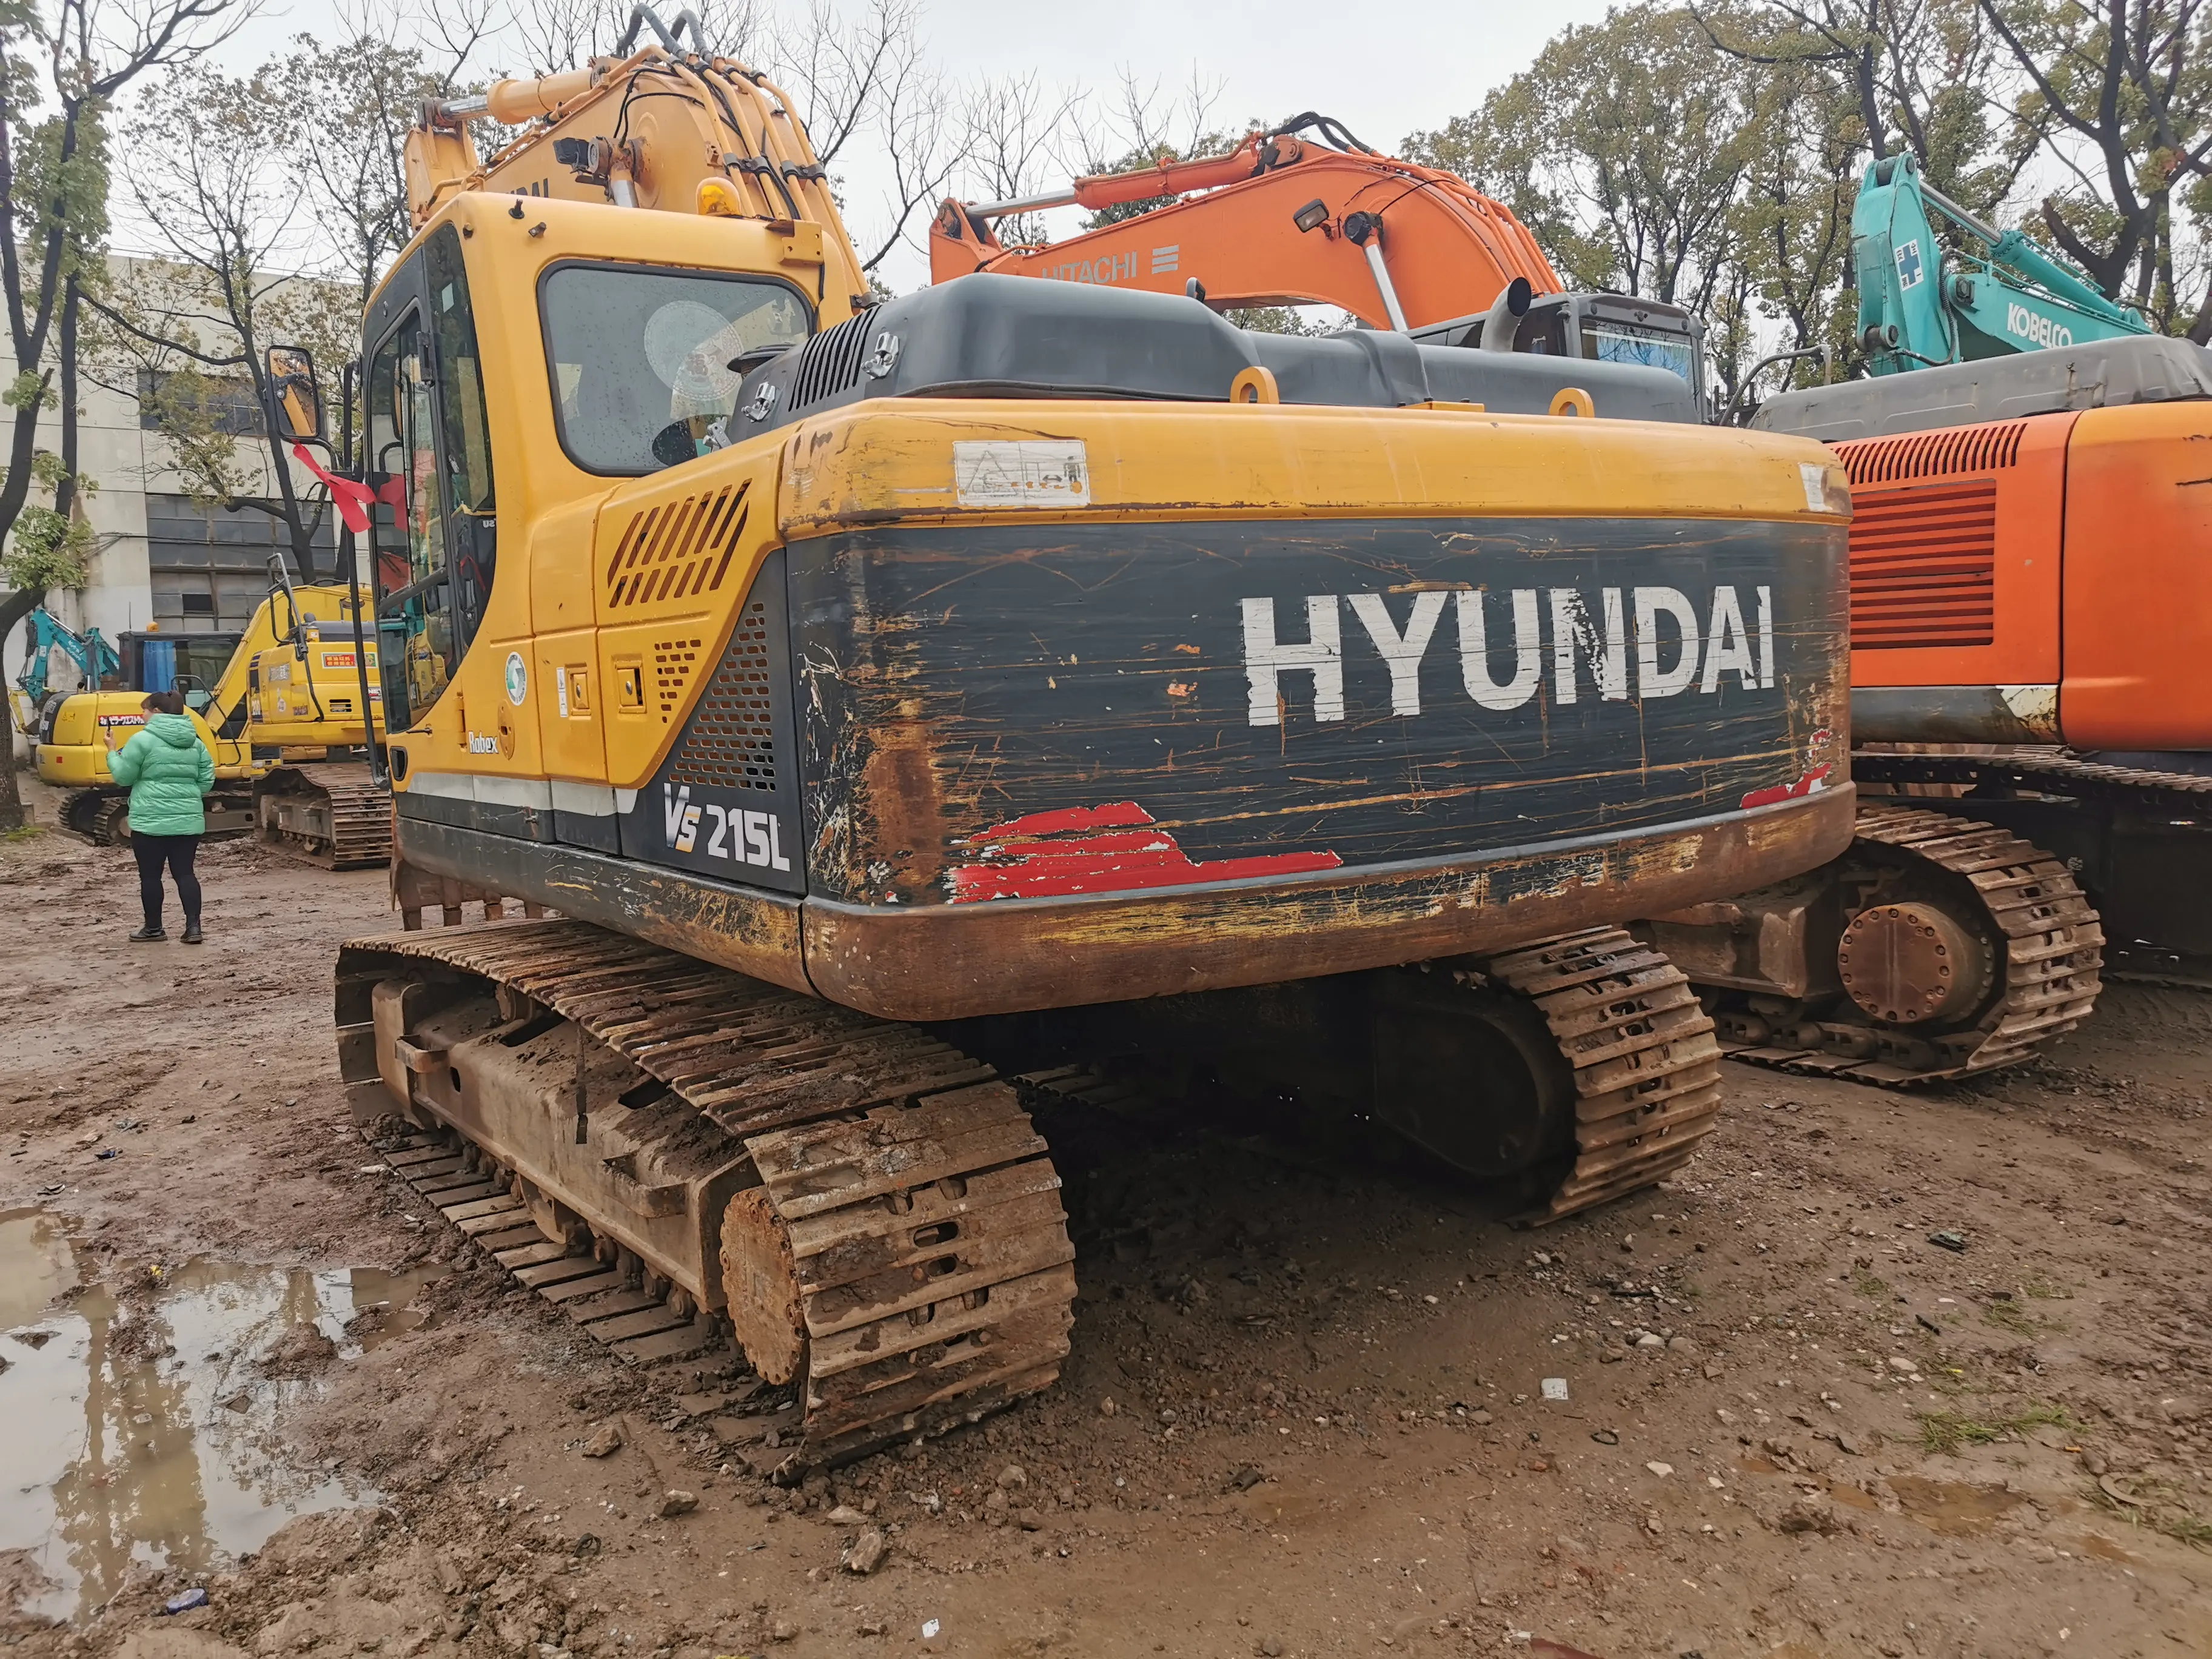 Wenige gebrauchte Arbeitszeiten HYUNDAI 215L gebraucht Korea-Marke Schwerlast-Hydraulikbagger 21T HYUNDAI